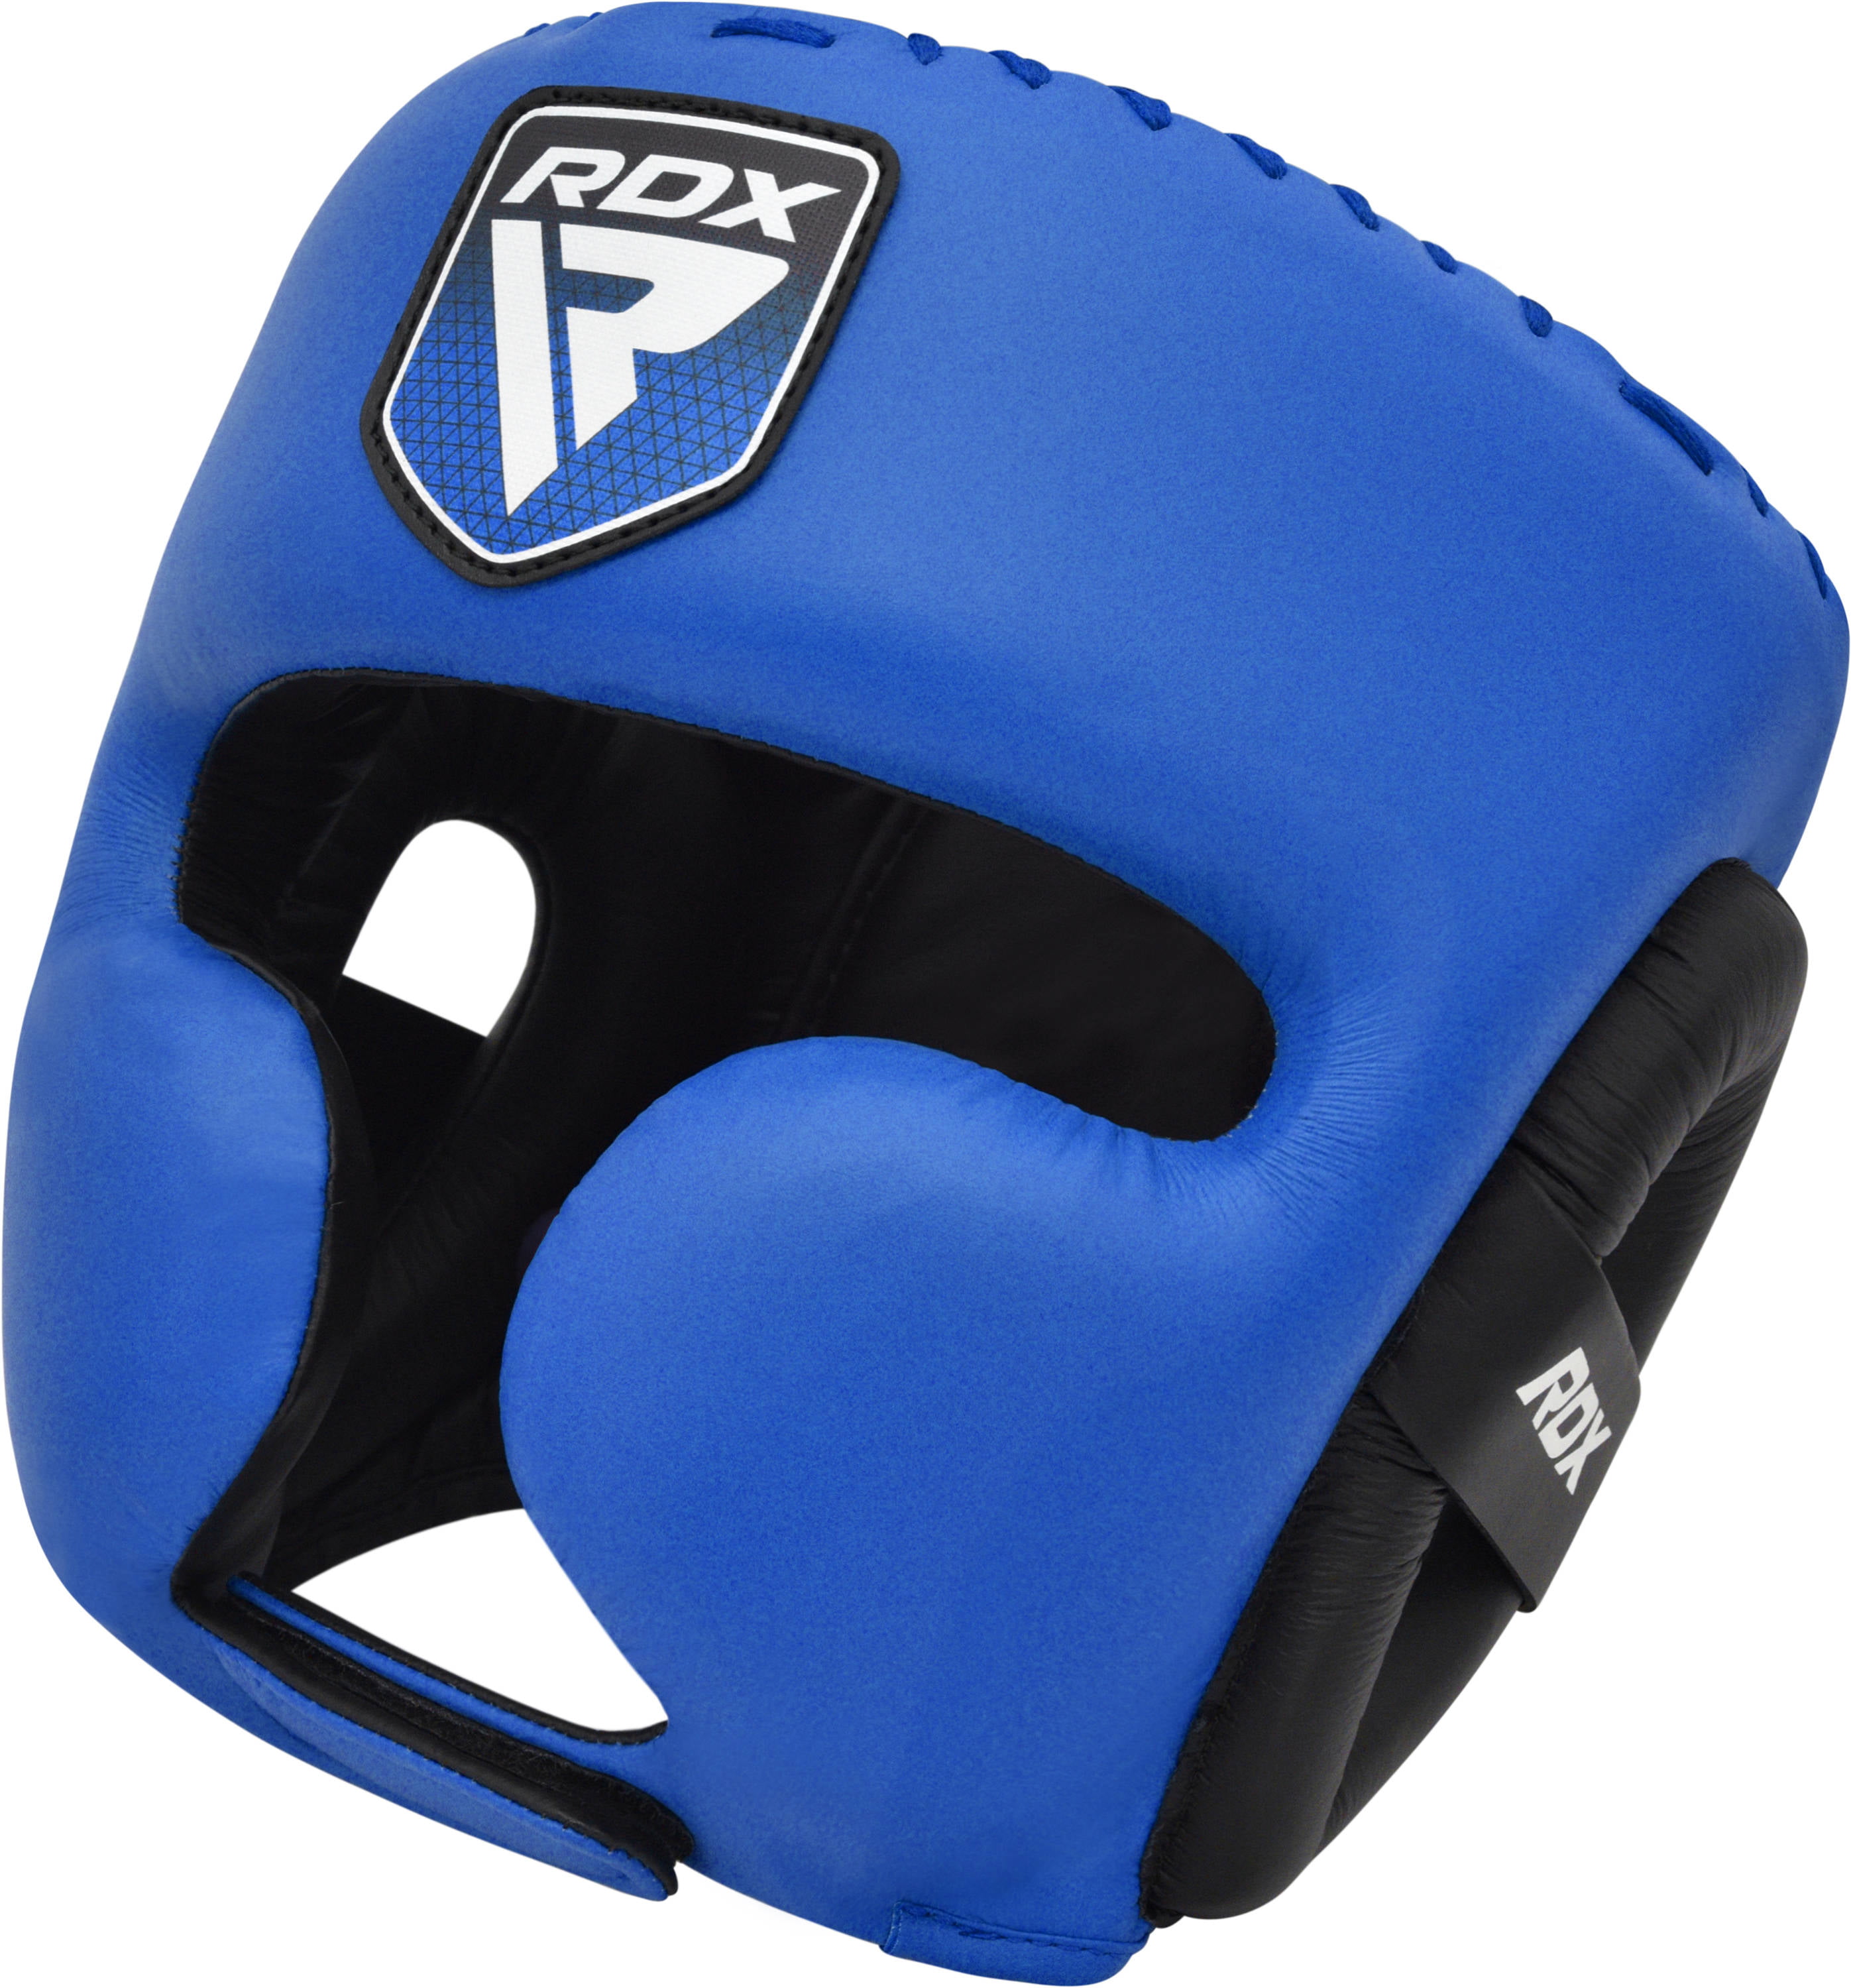 RDX Head Guard MMA Helmet Protector Kick Boxing Headgear Martial Art Sparring 